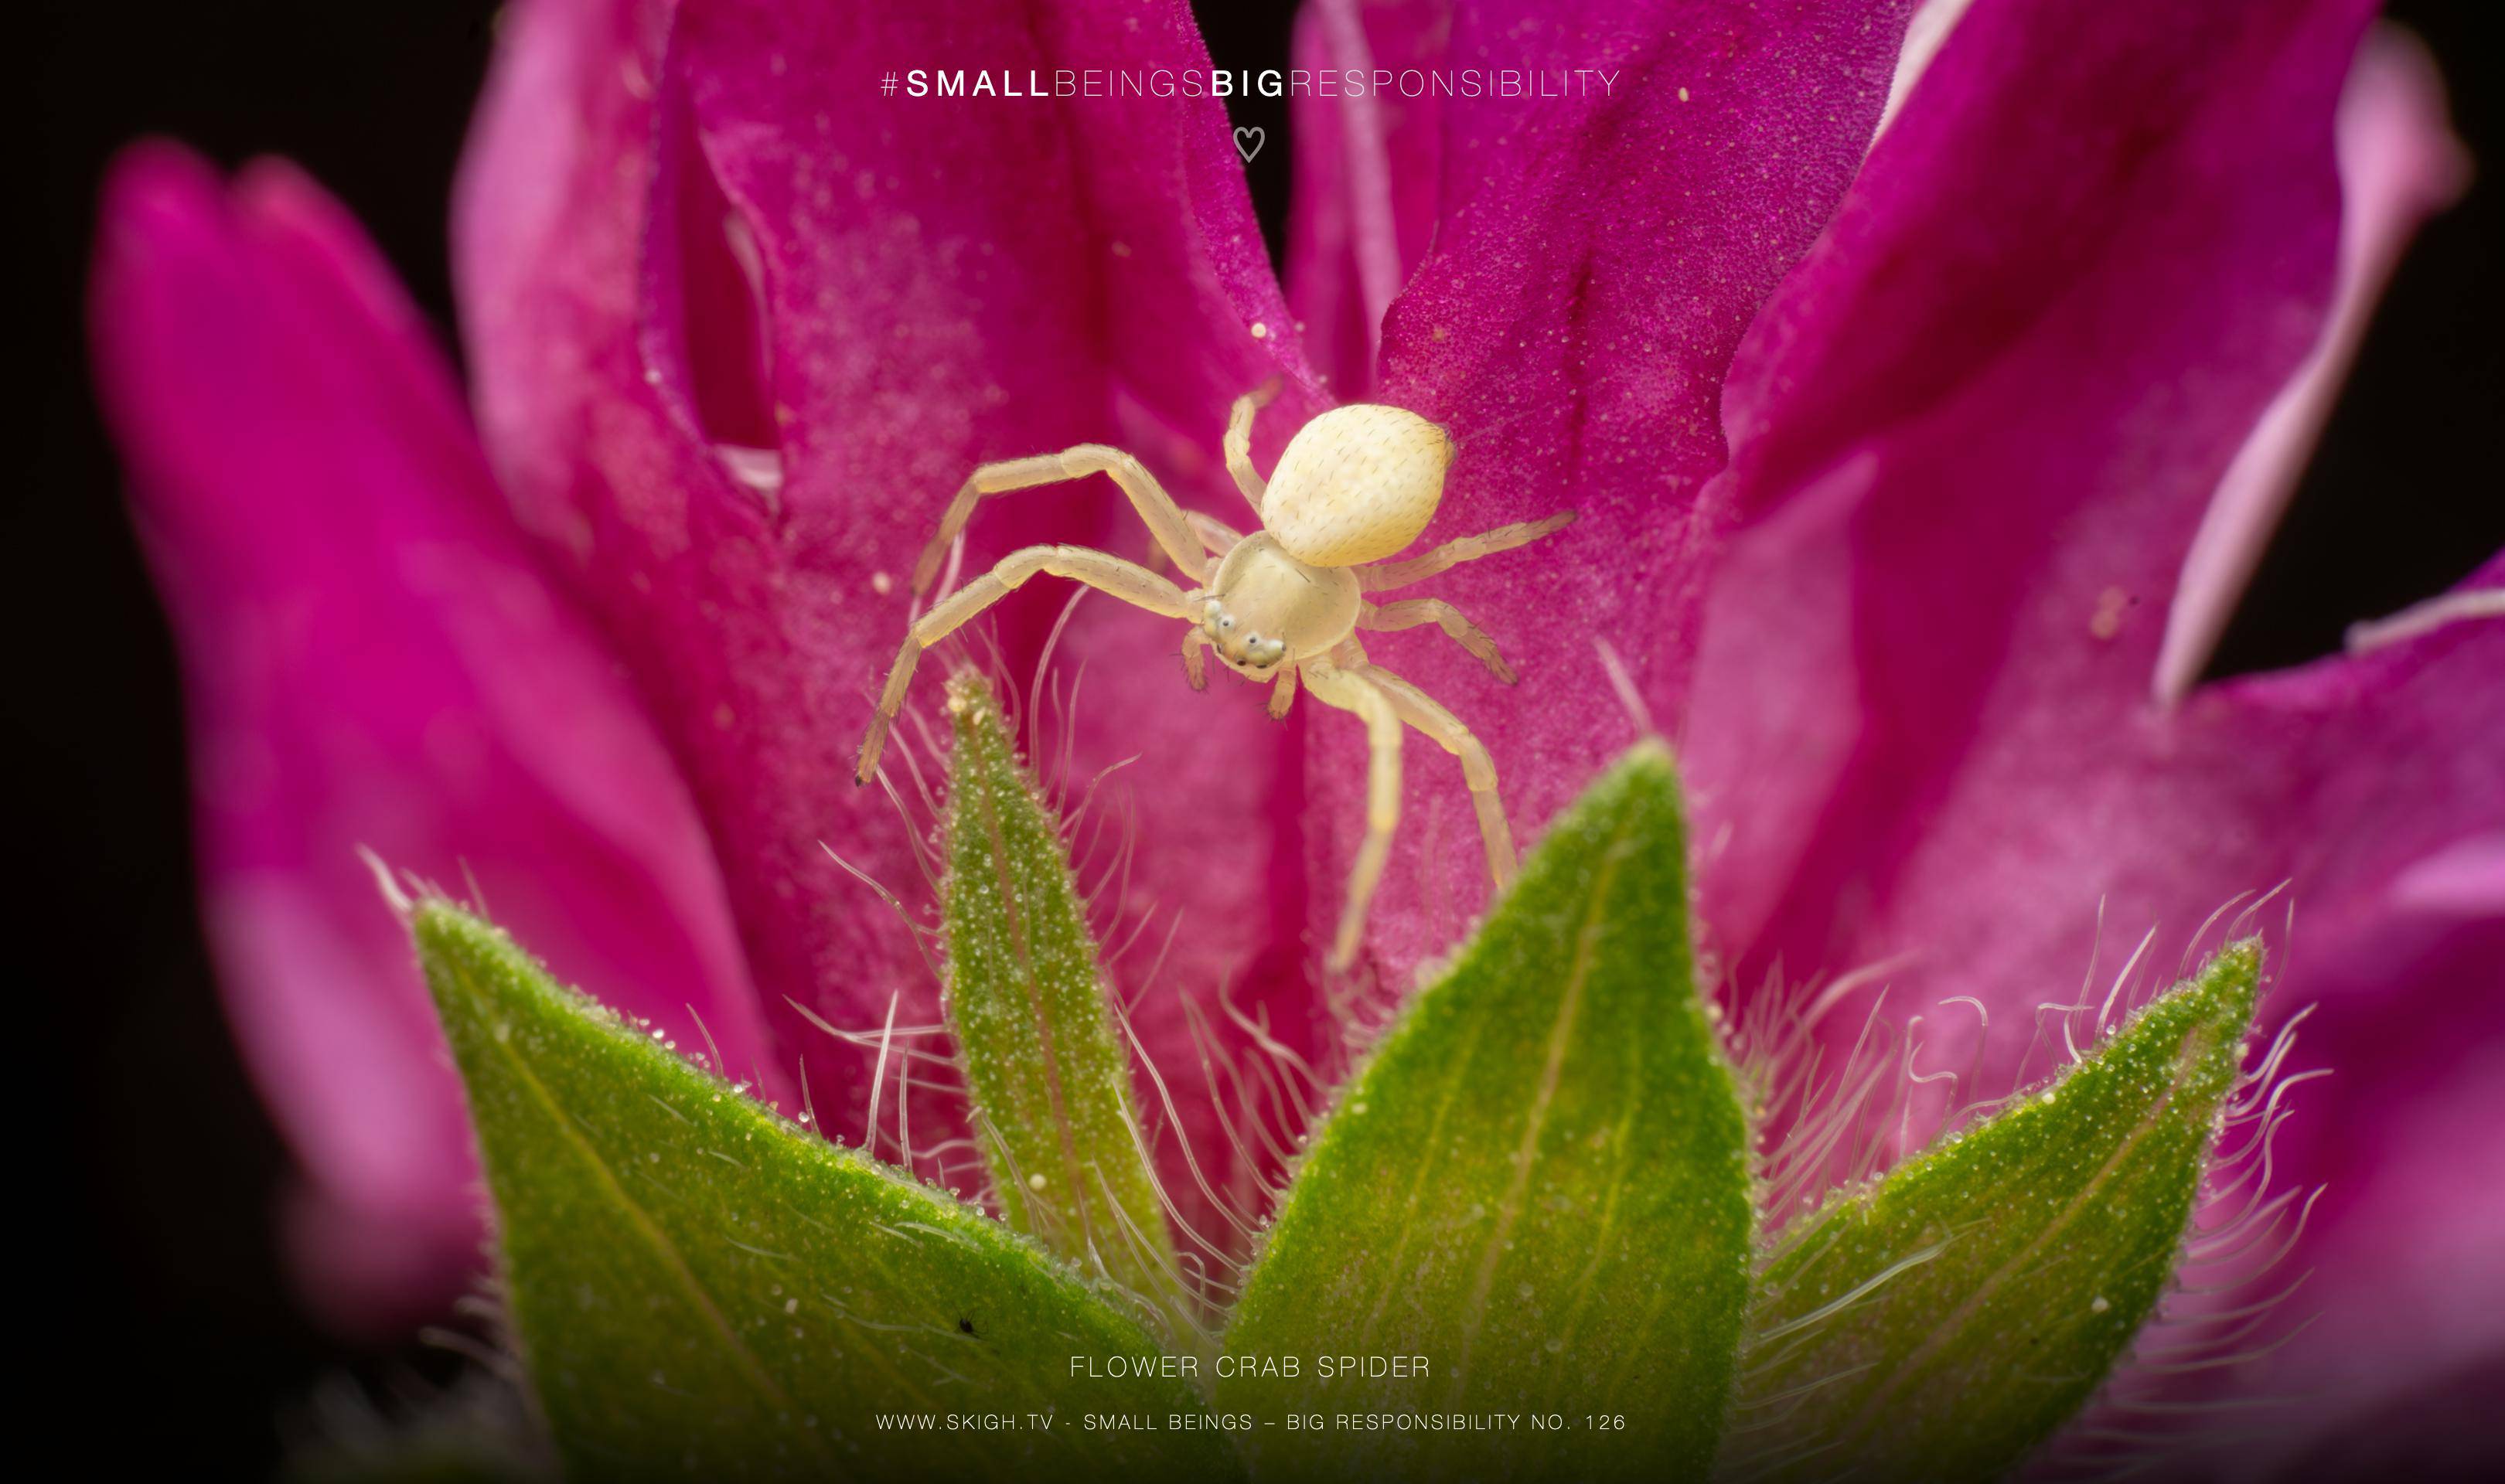 flower crab spider